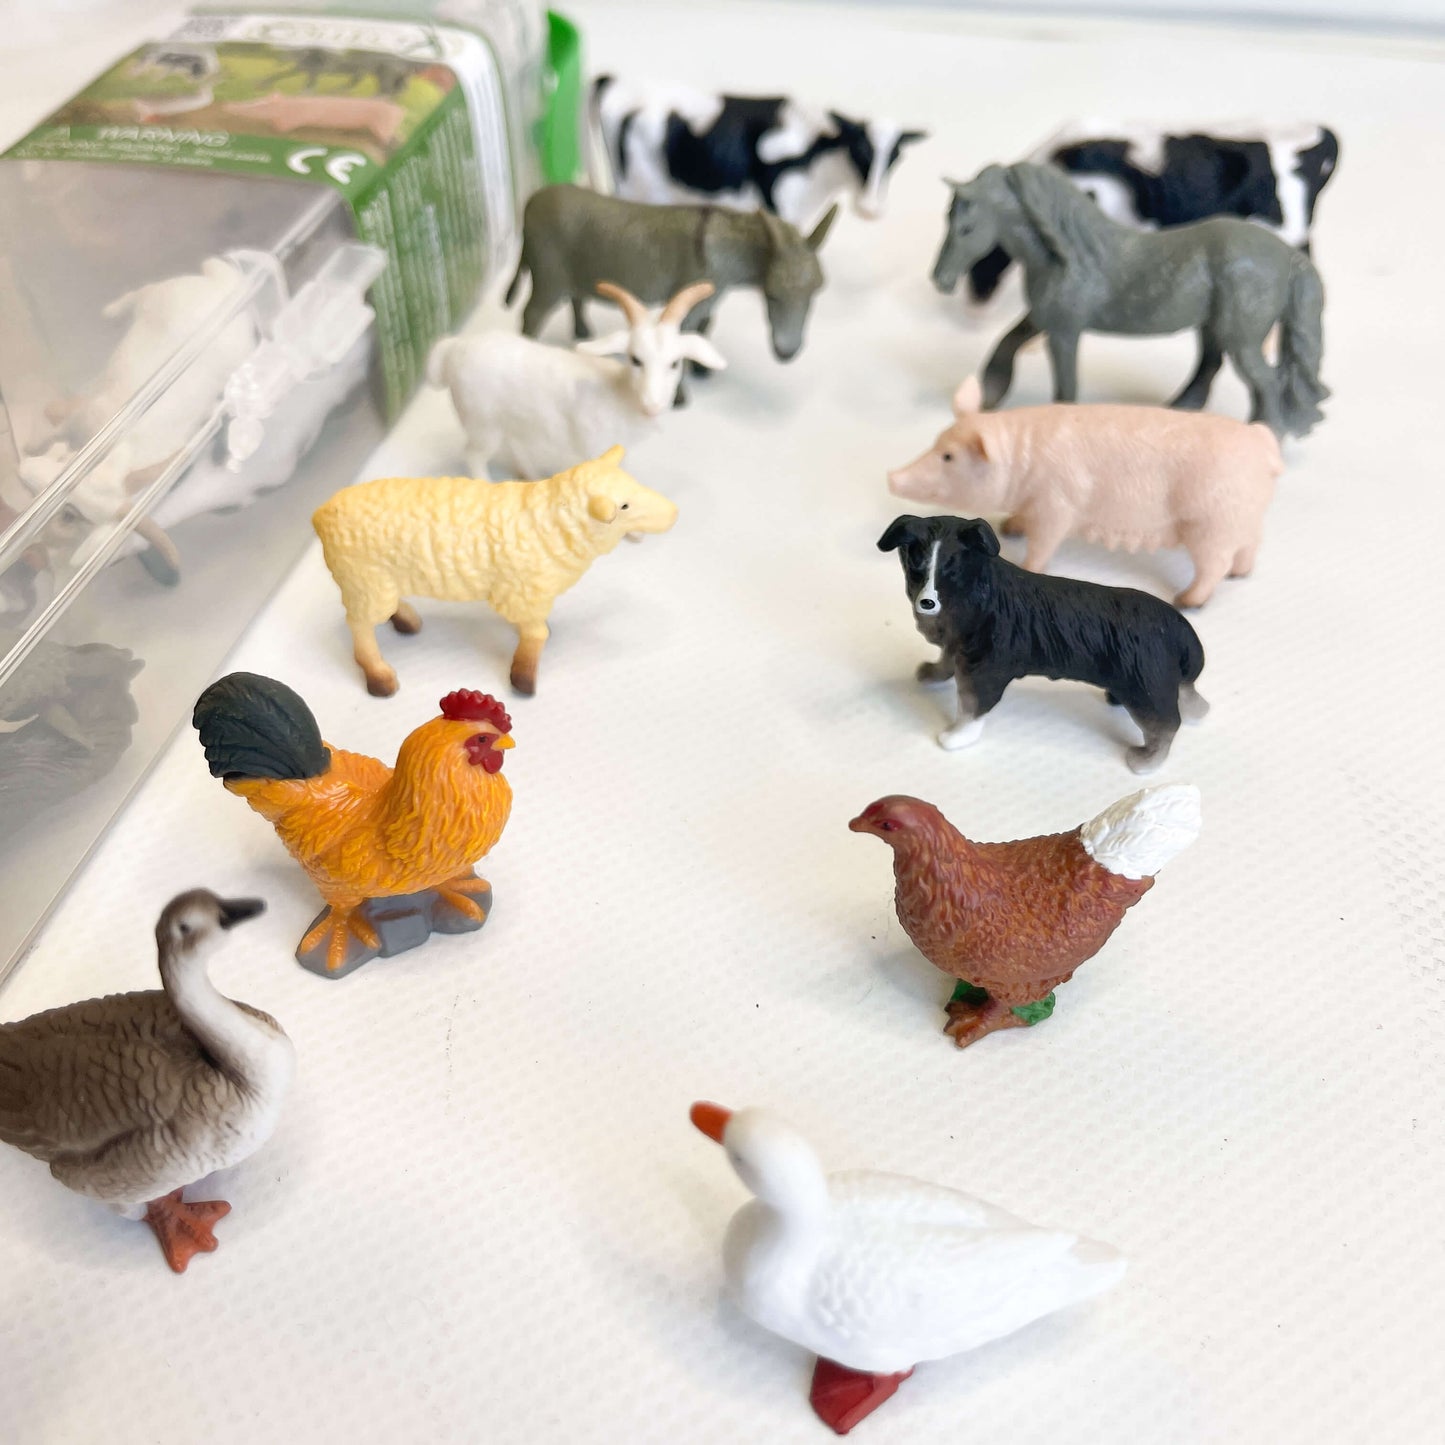 Farm animal figurines.